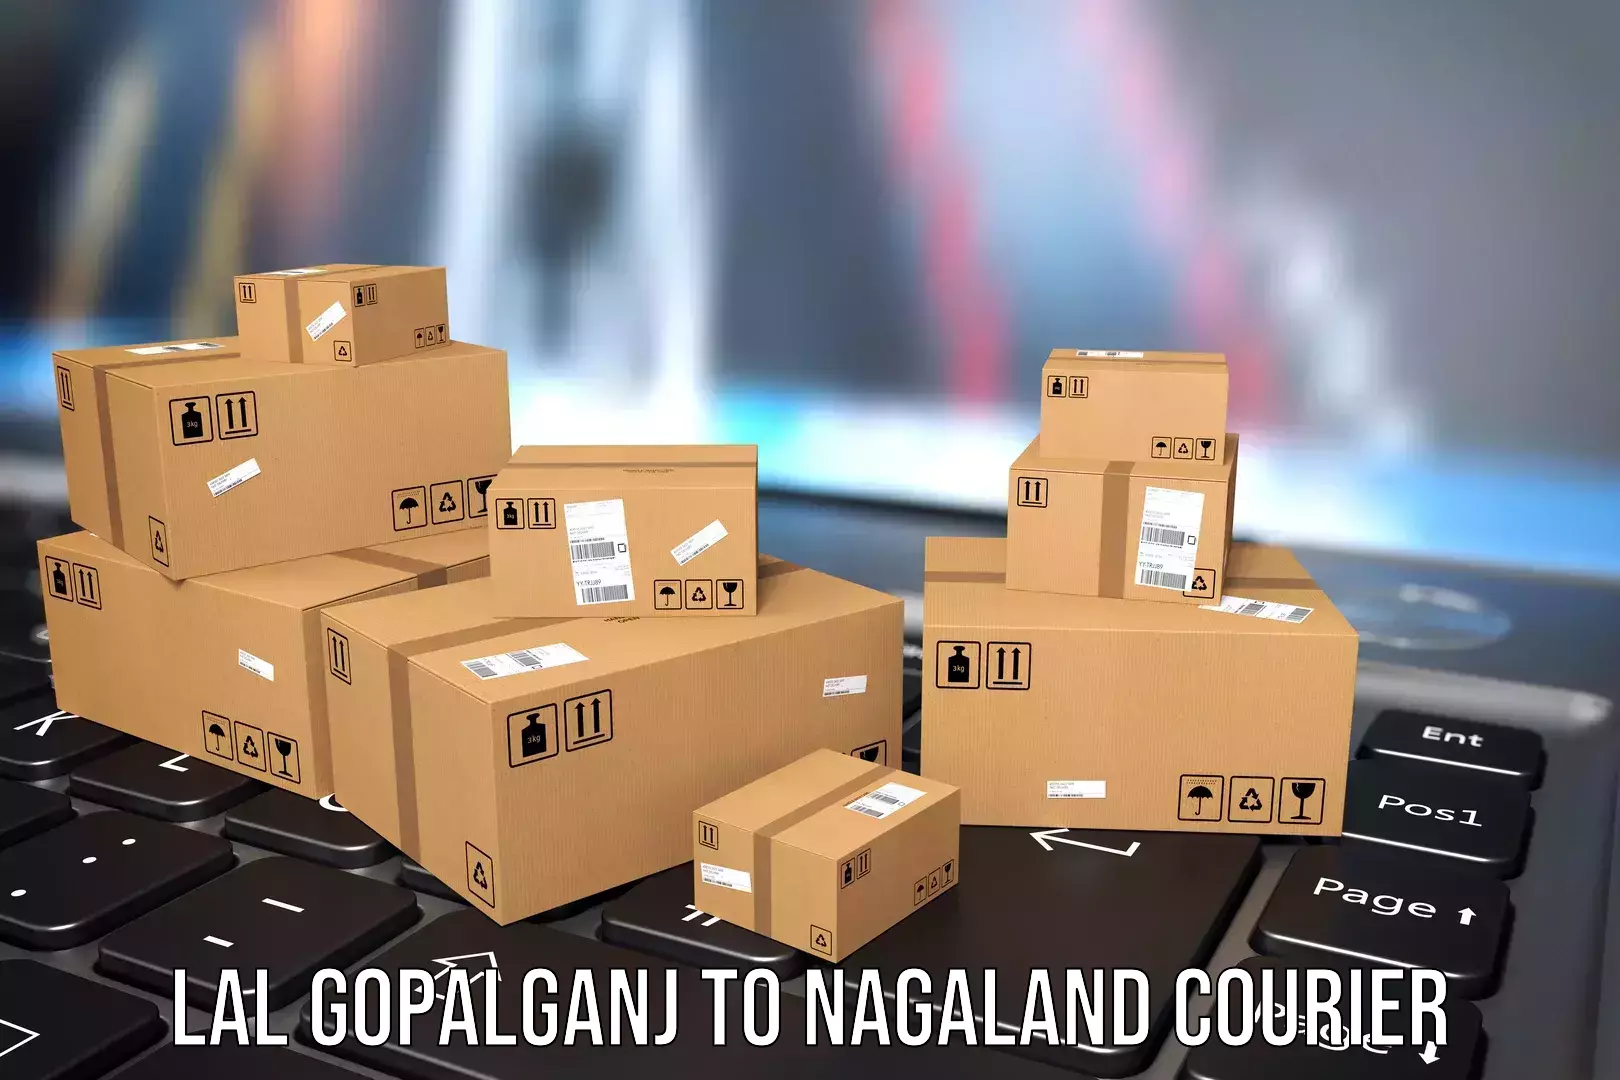 Luggage shipment tracking Lal Gopalganj to Nagaland